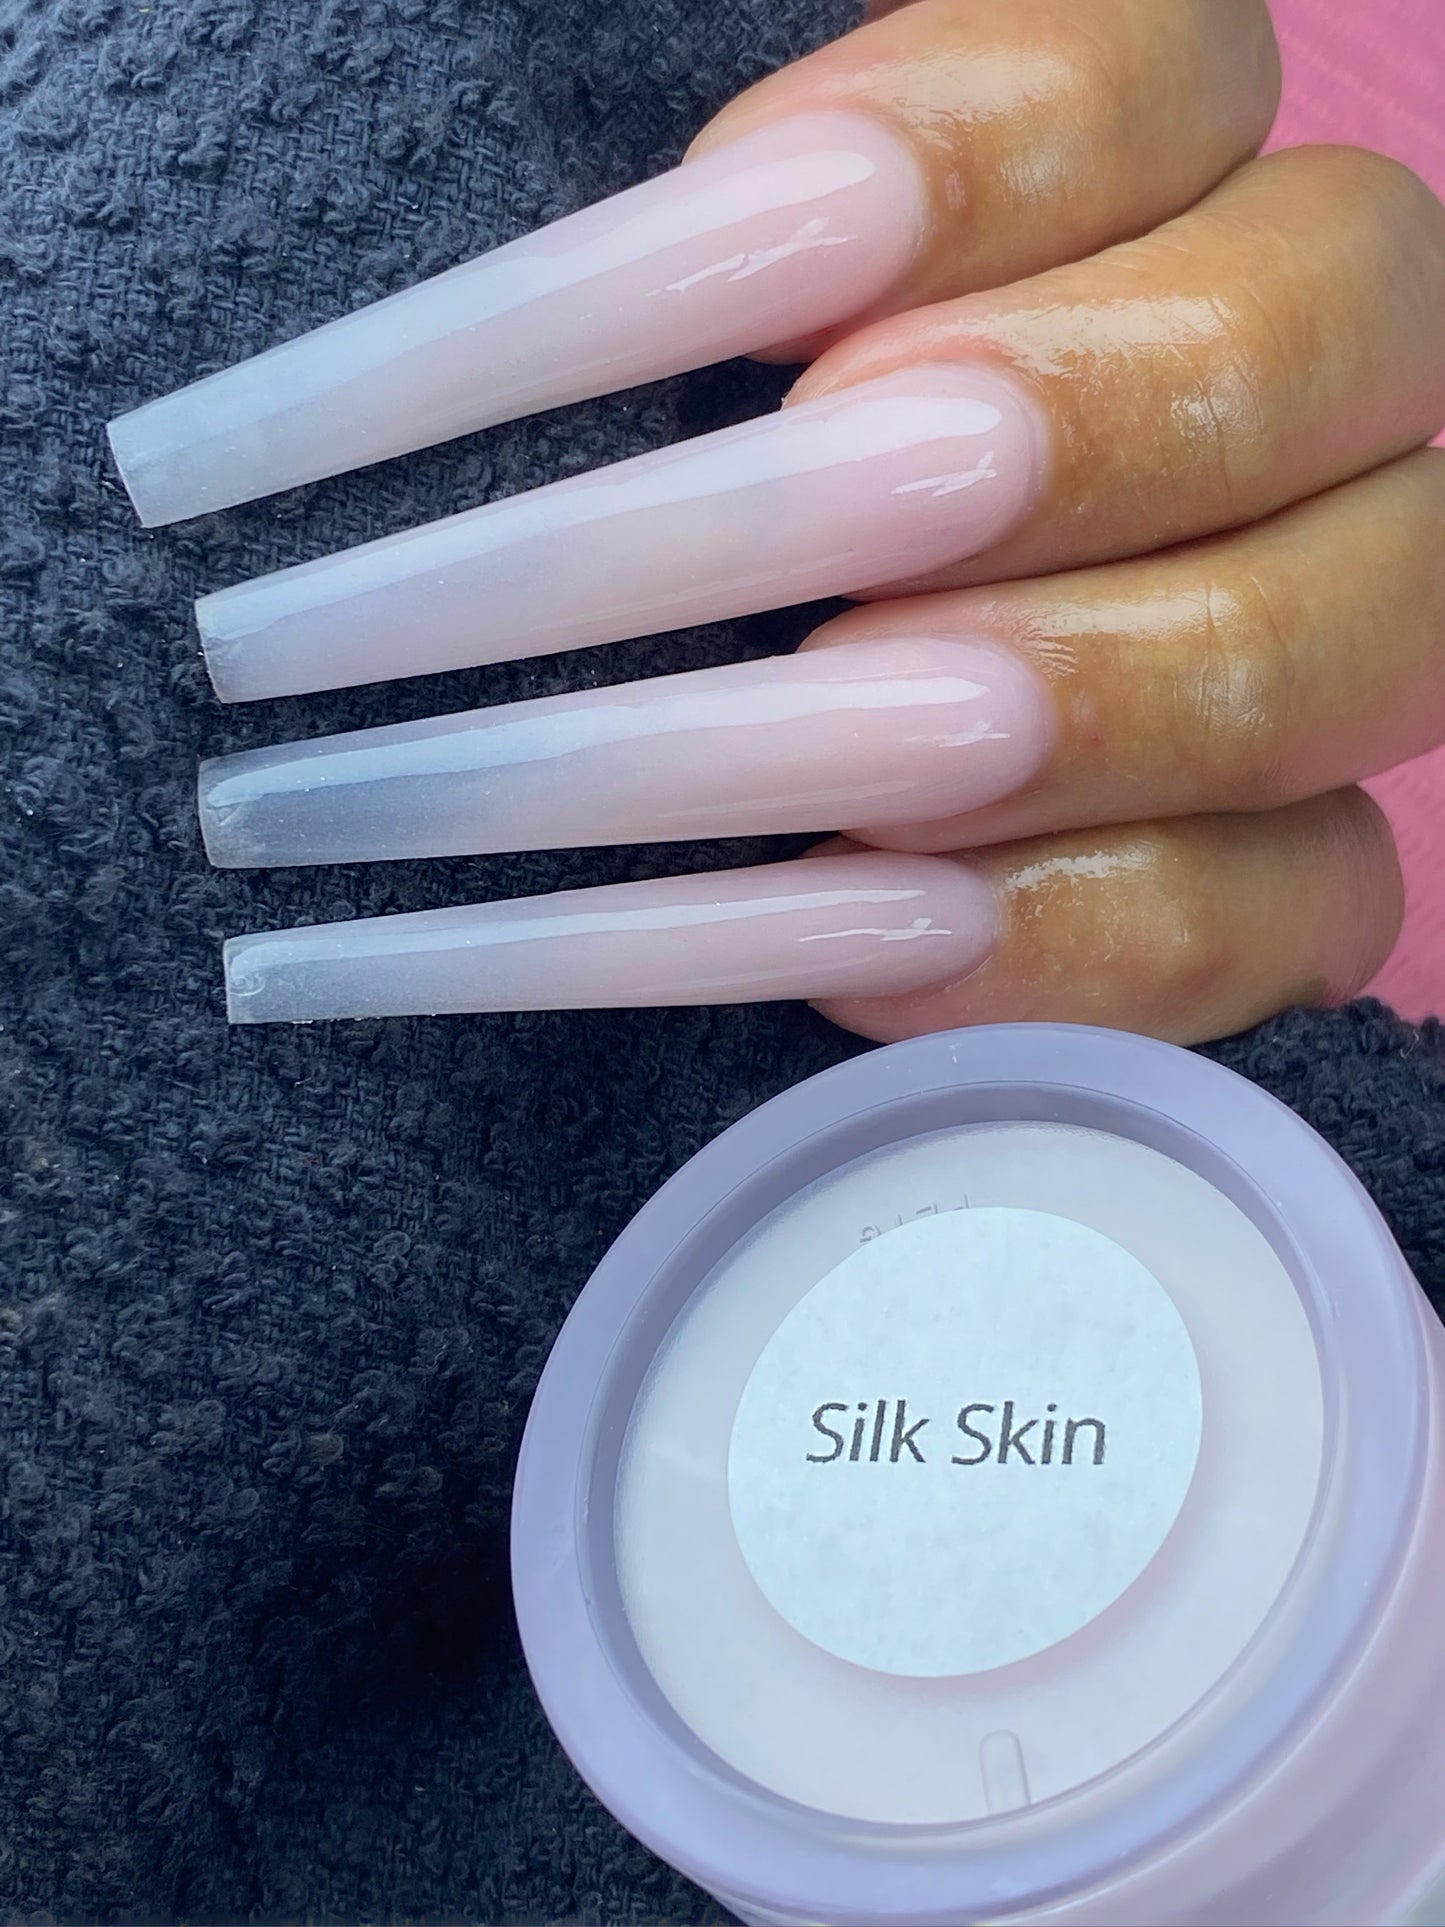 Silk Skin acrylic powder